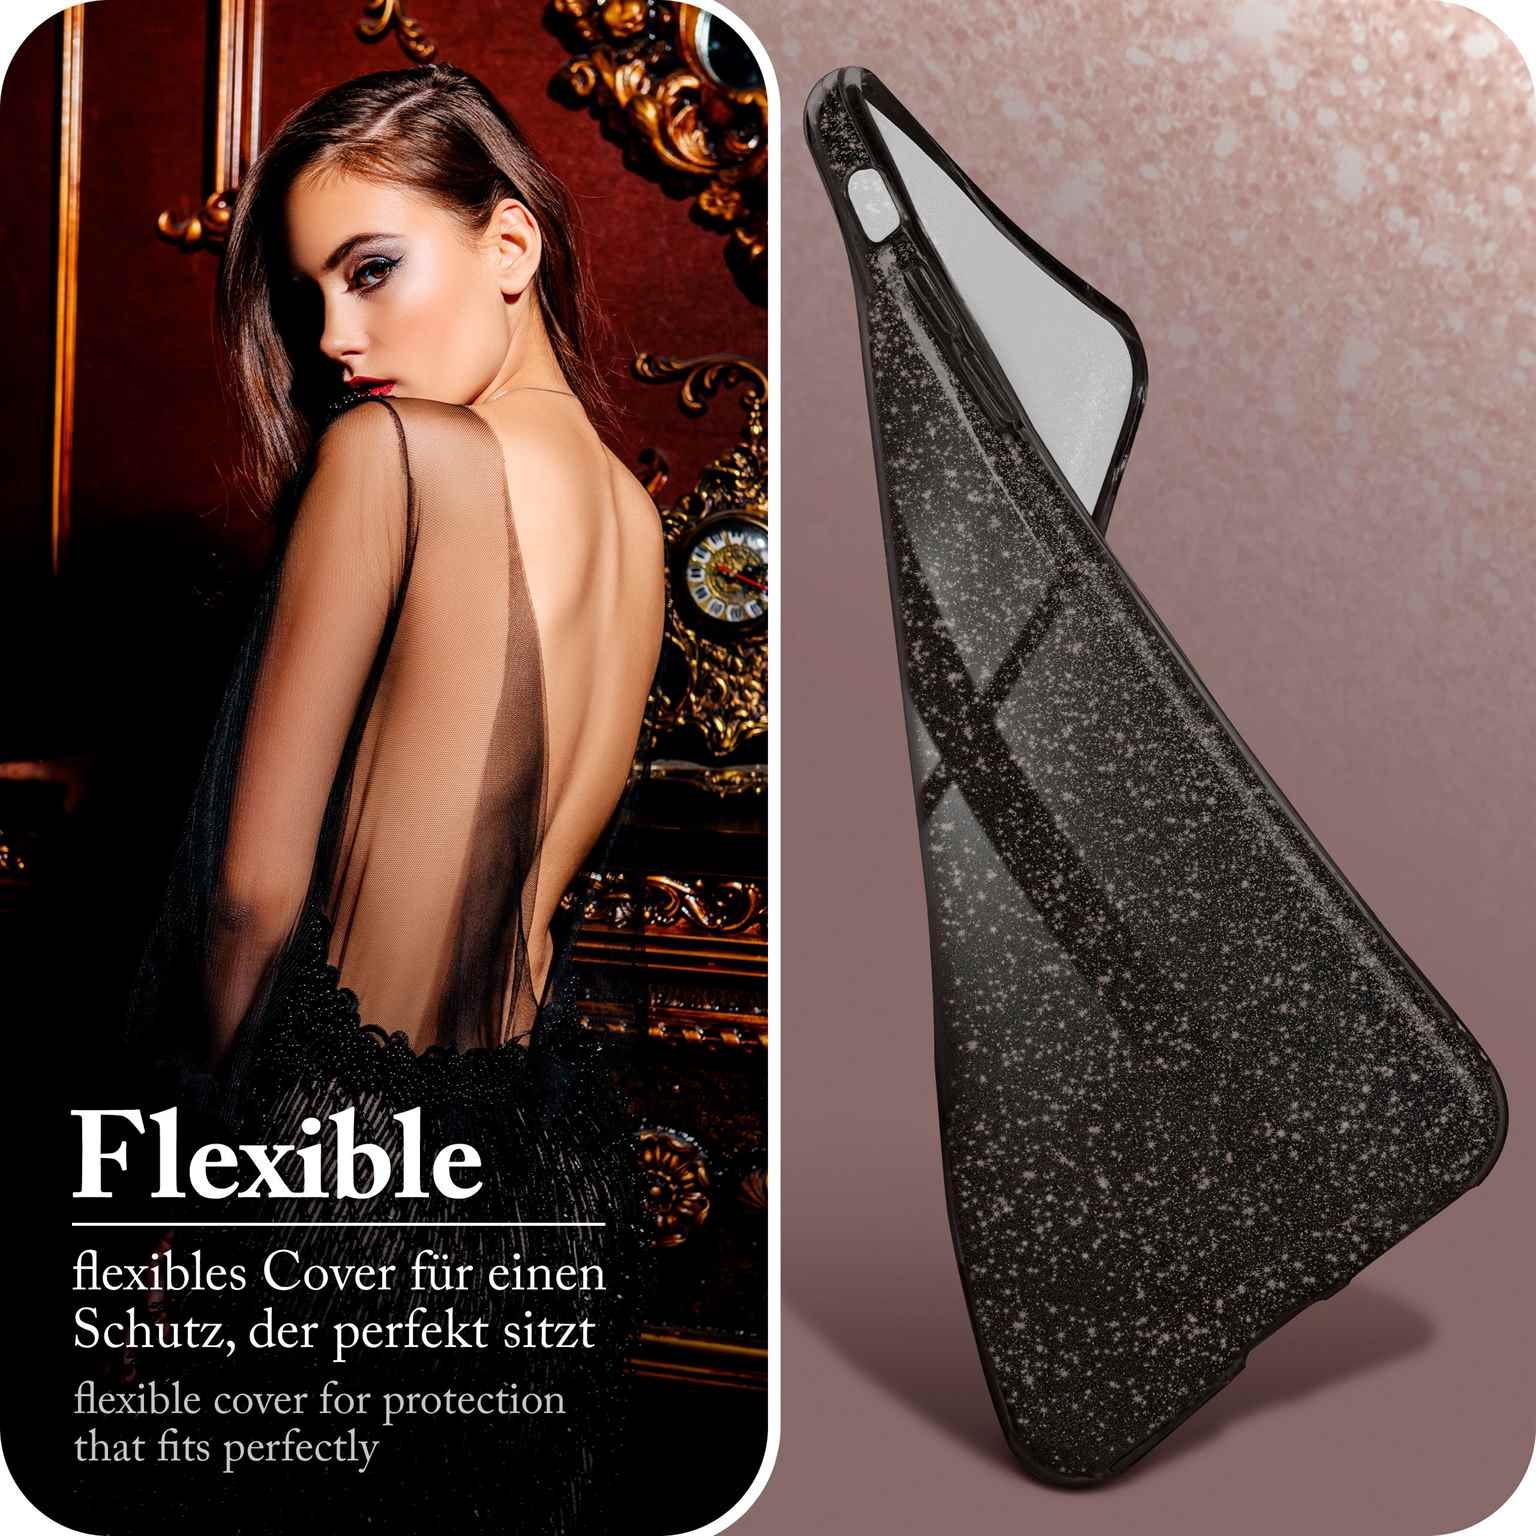 Glitter Black Backcover, Case, - ONEFLOW iPhone Apple, XR, Glamour